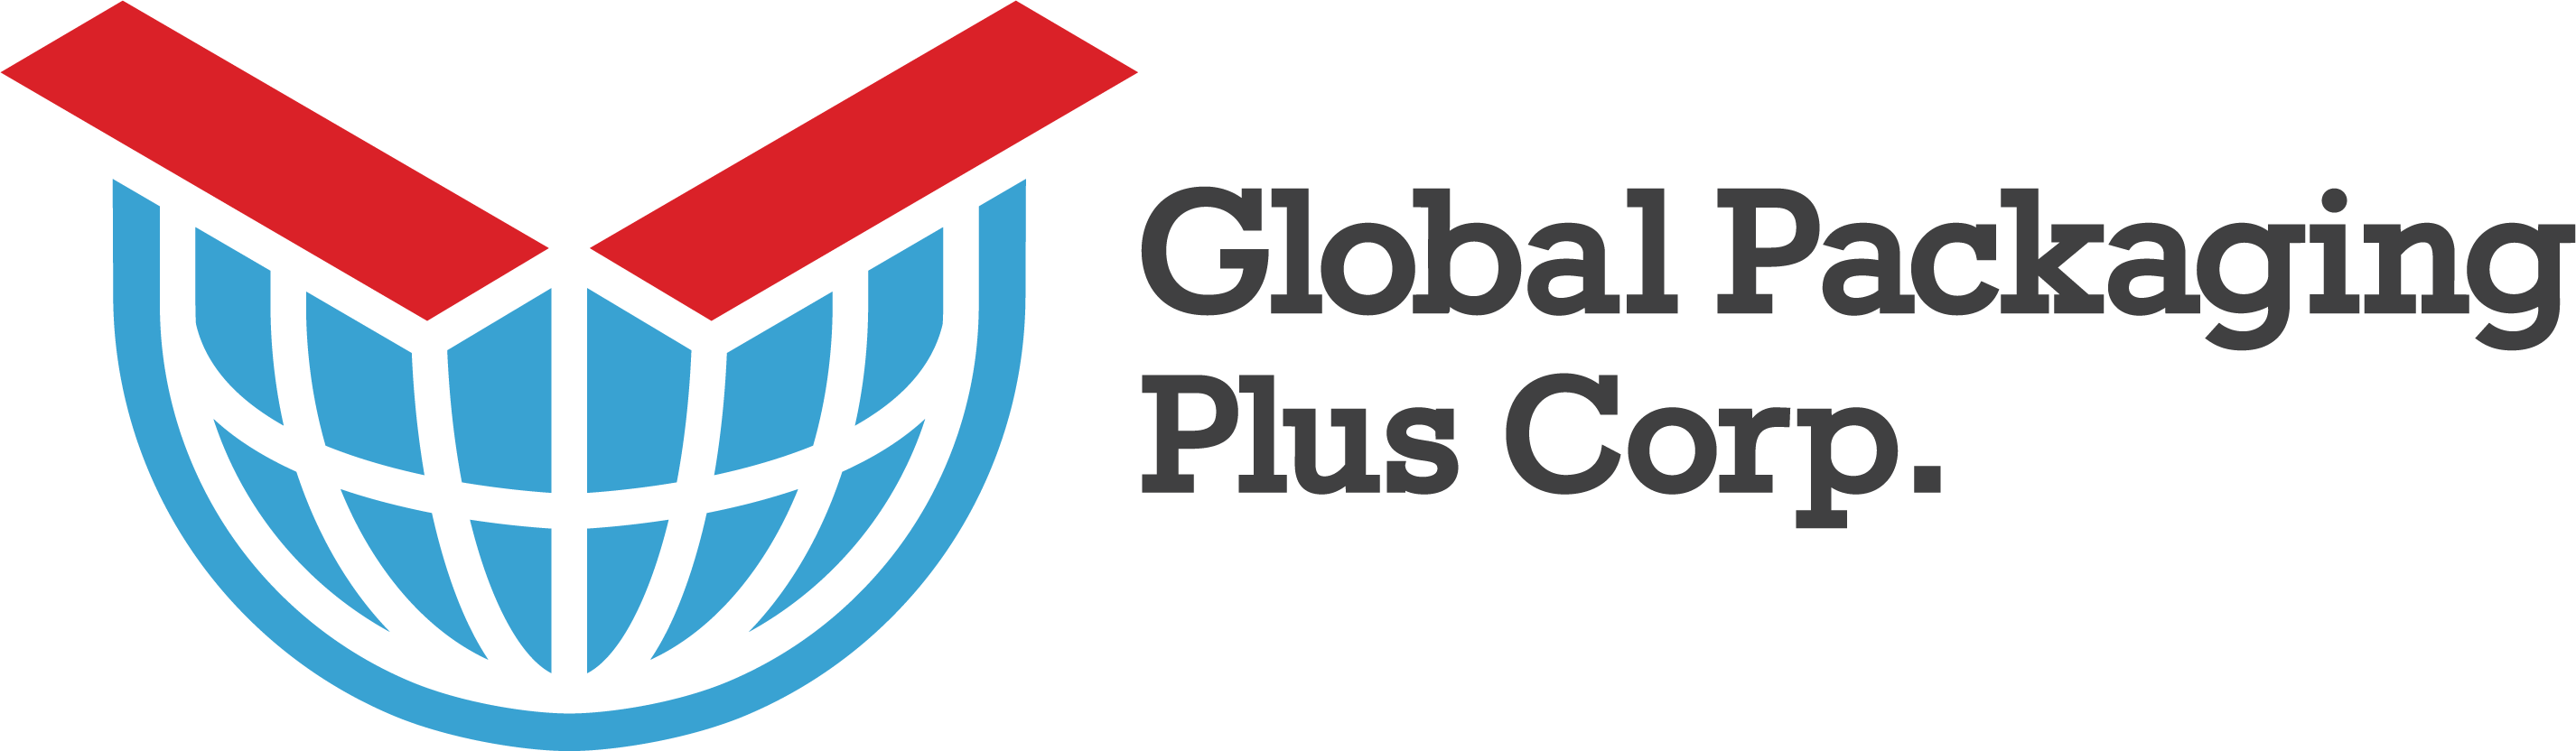 Global Packaging Plus Corp.